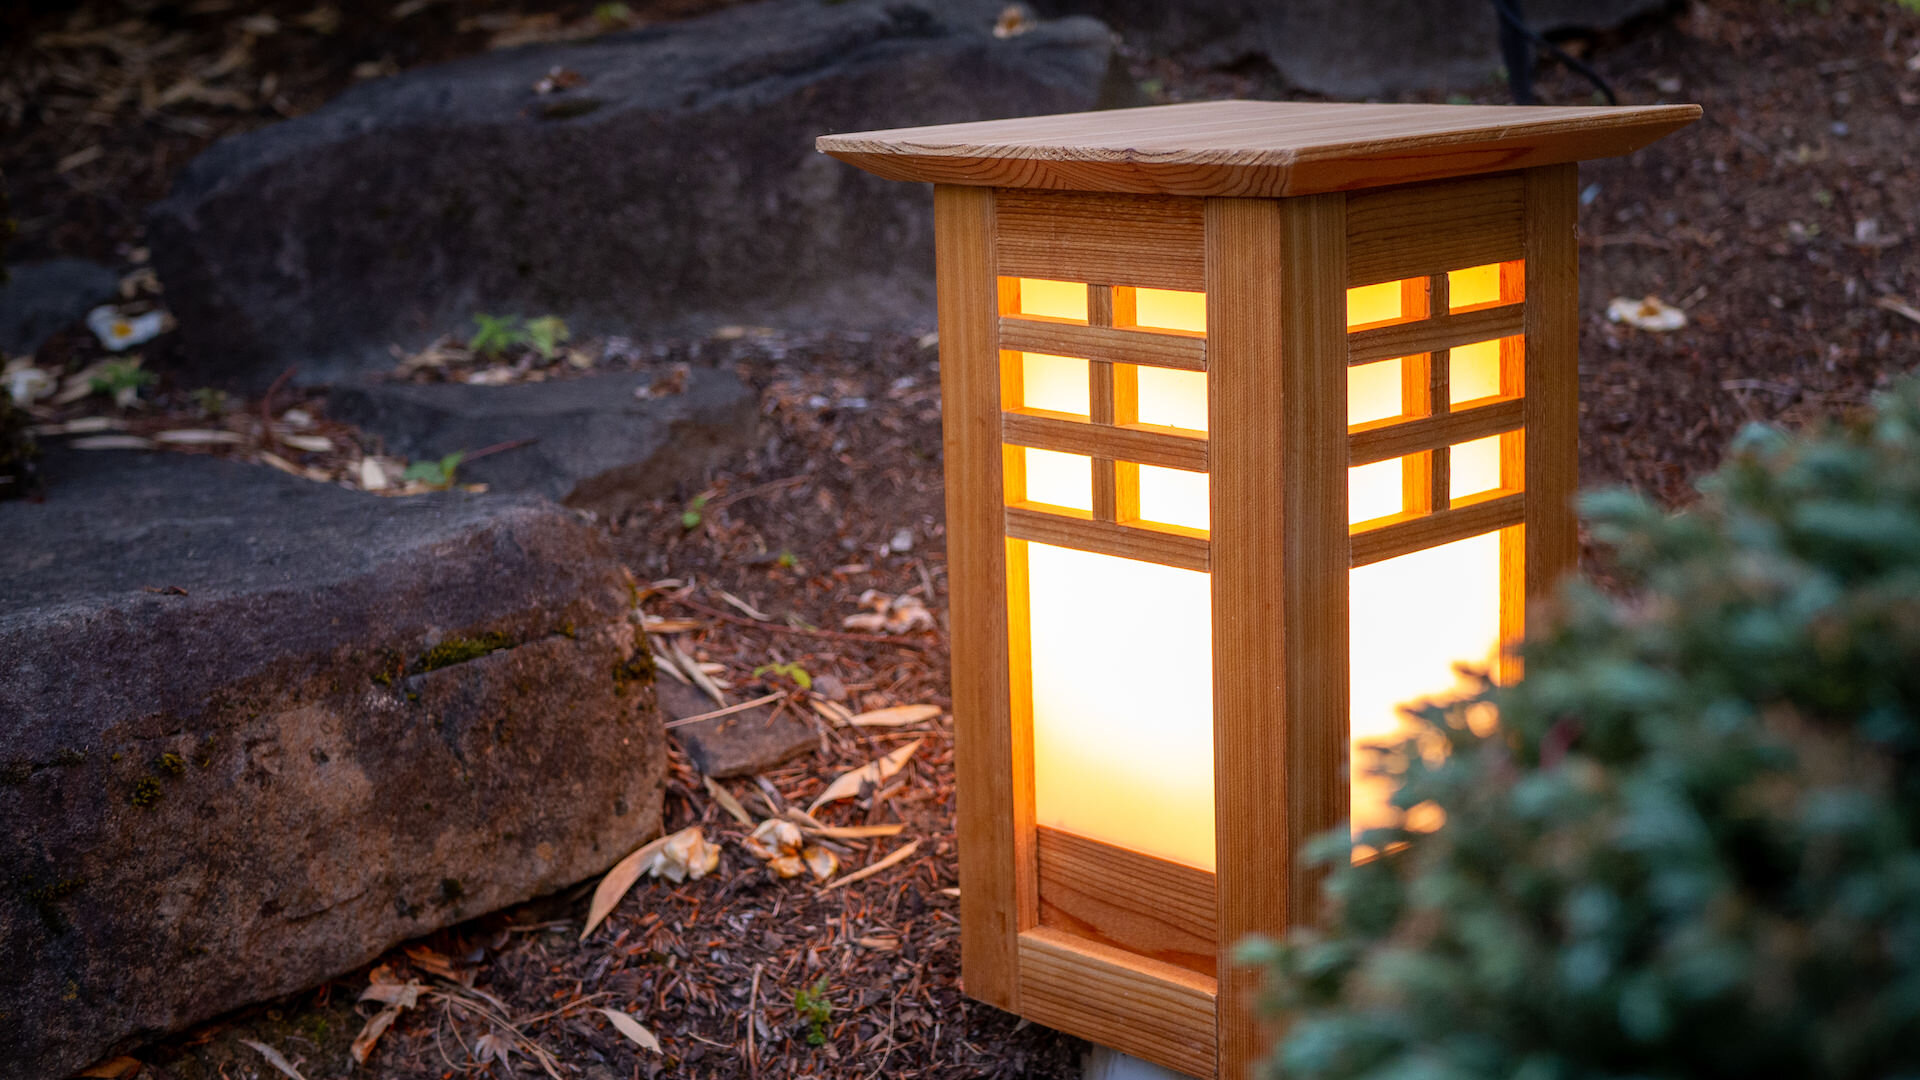 Outdoor Japanese Lantern Plans, Diy Japanese Garden Lantern